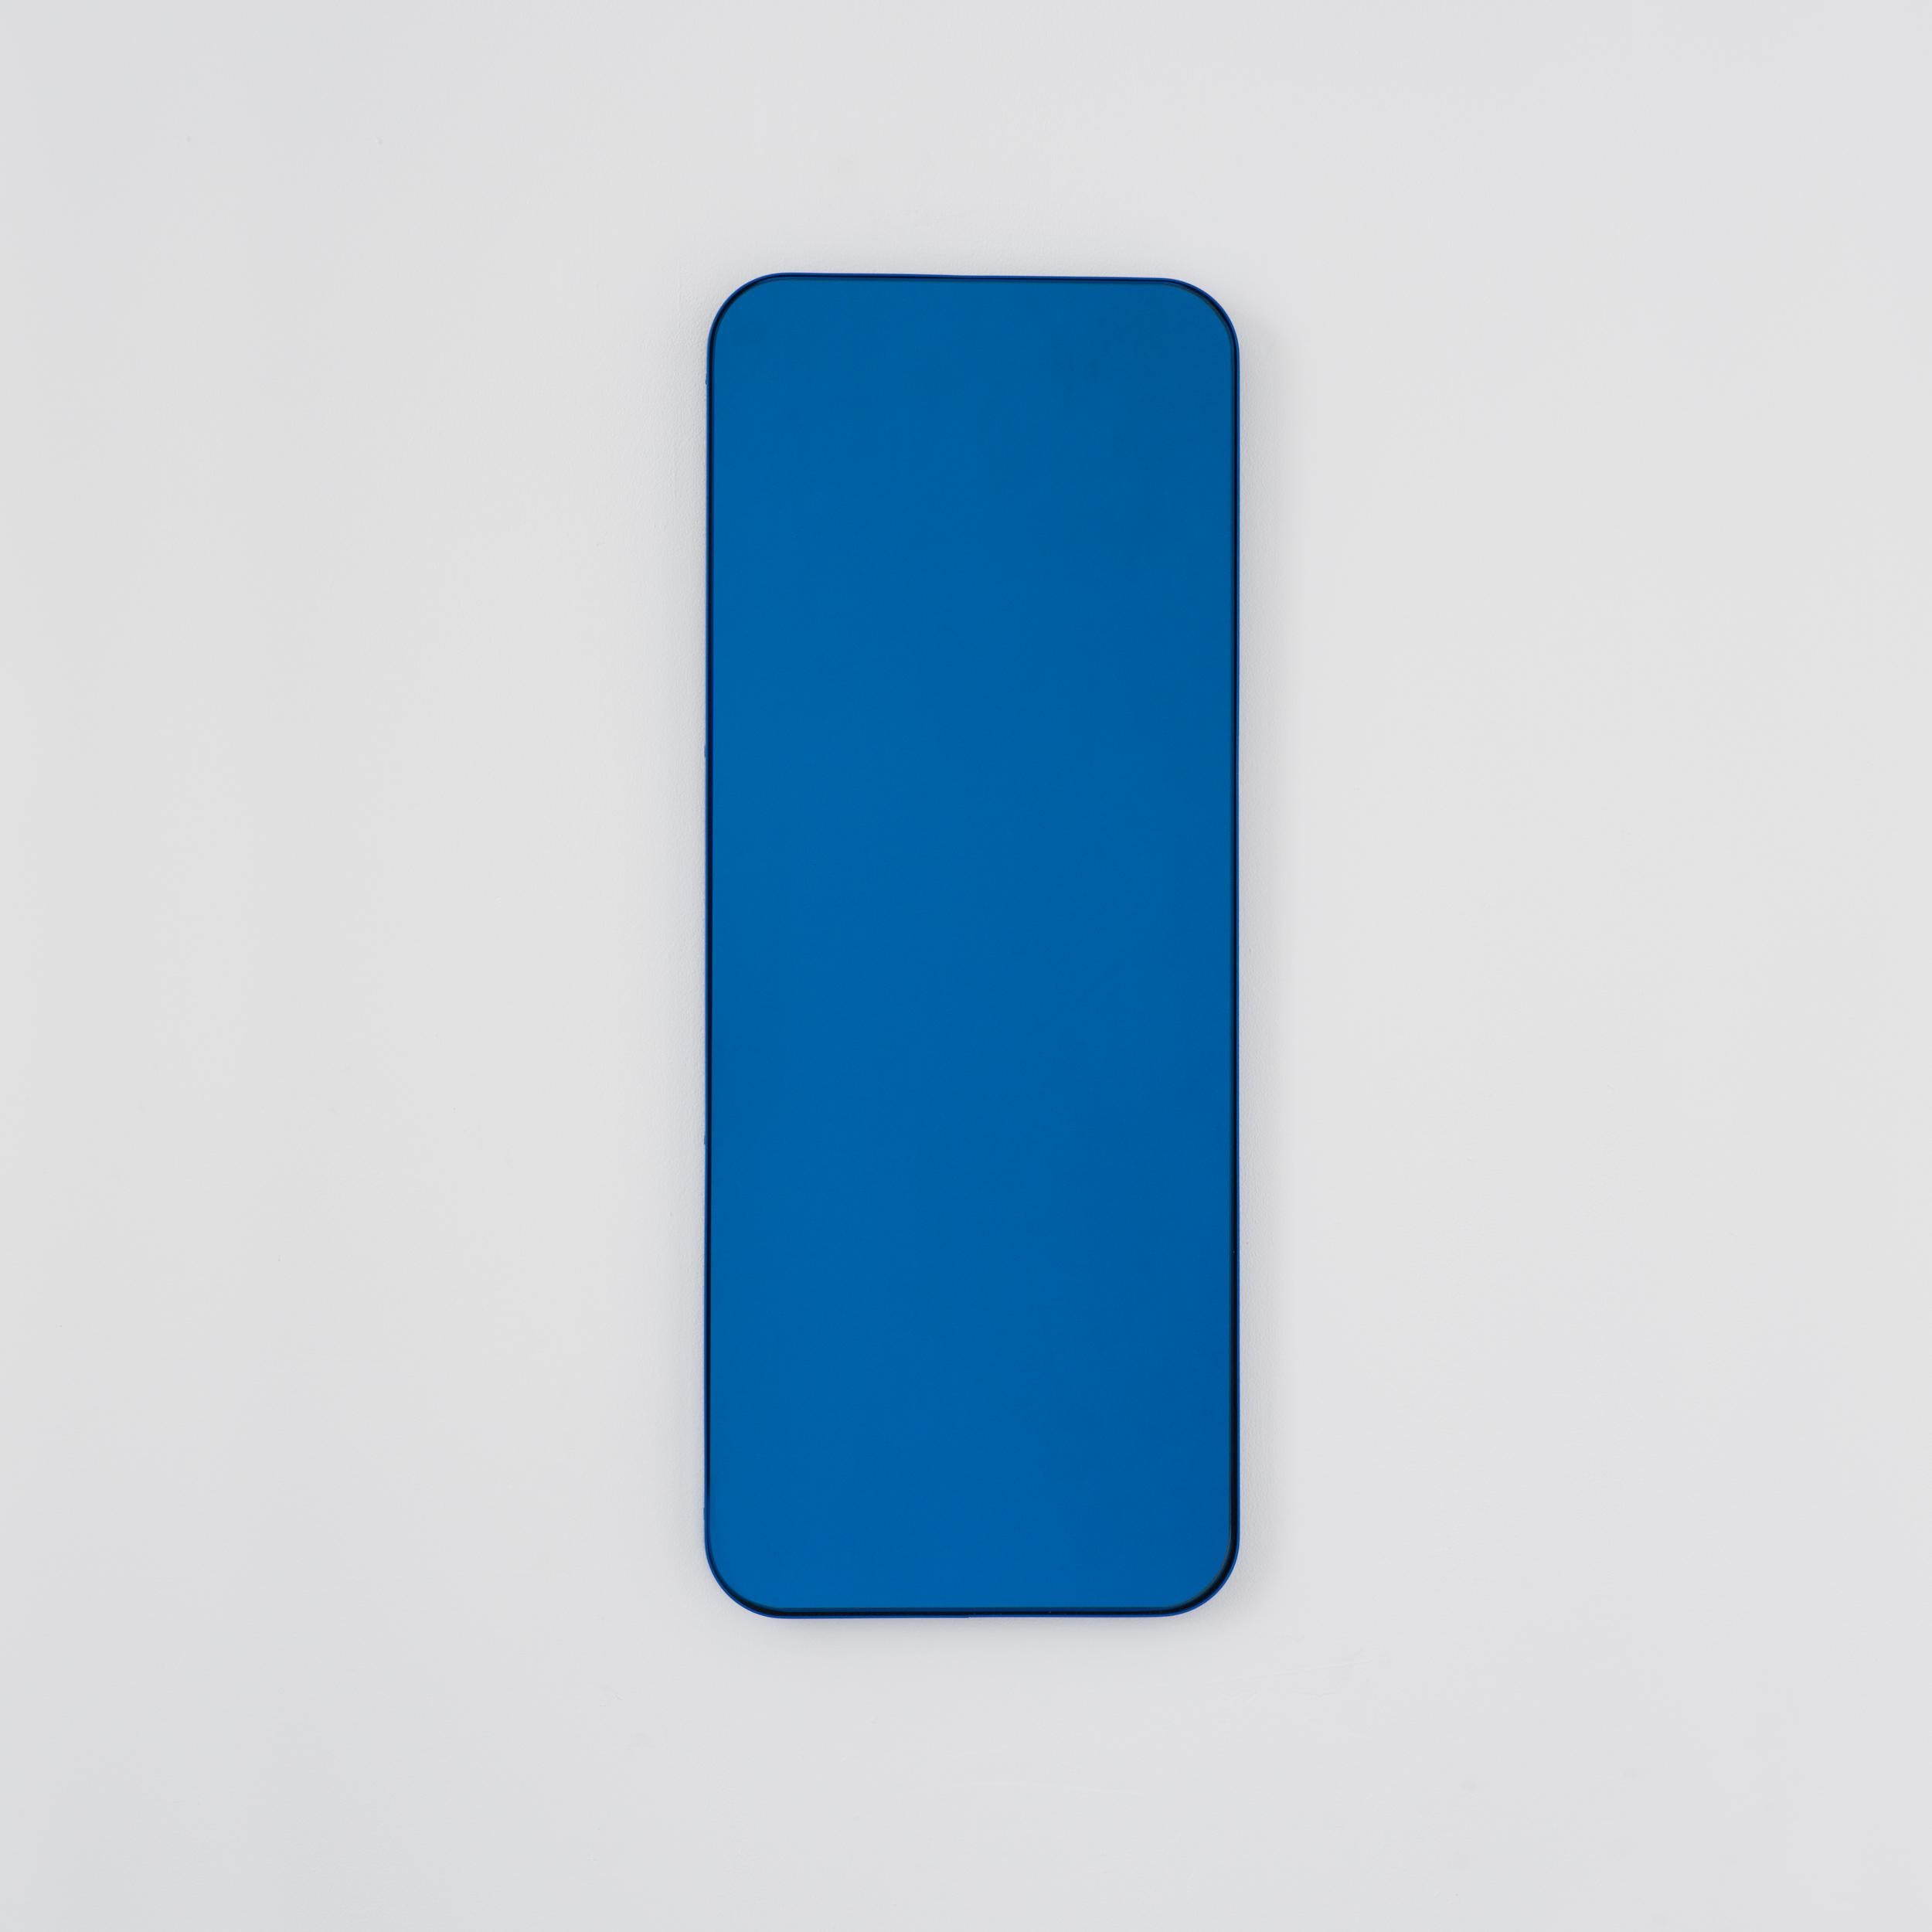 Moderner rechteckiger Spiegel mit einem eleganten blauen Rahmen. Teil der charmanten Quadris Collection, entworfen und handgefertigt in London, UK. 

Die Lieferung erfolgt mit einer speziellen Z-Stange für eine einfache Installation. Auf Anfrage